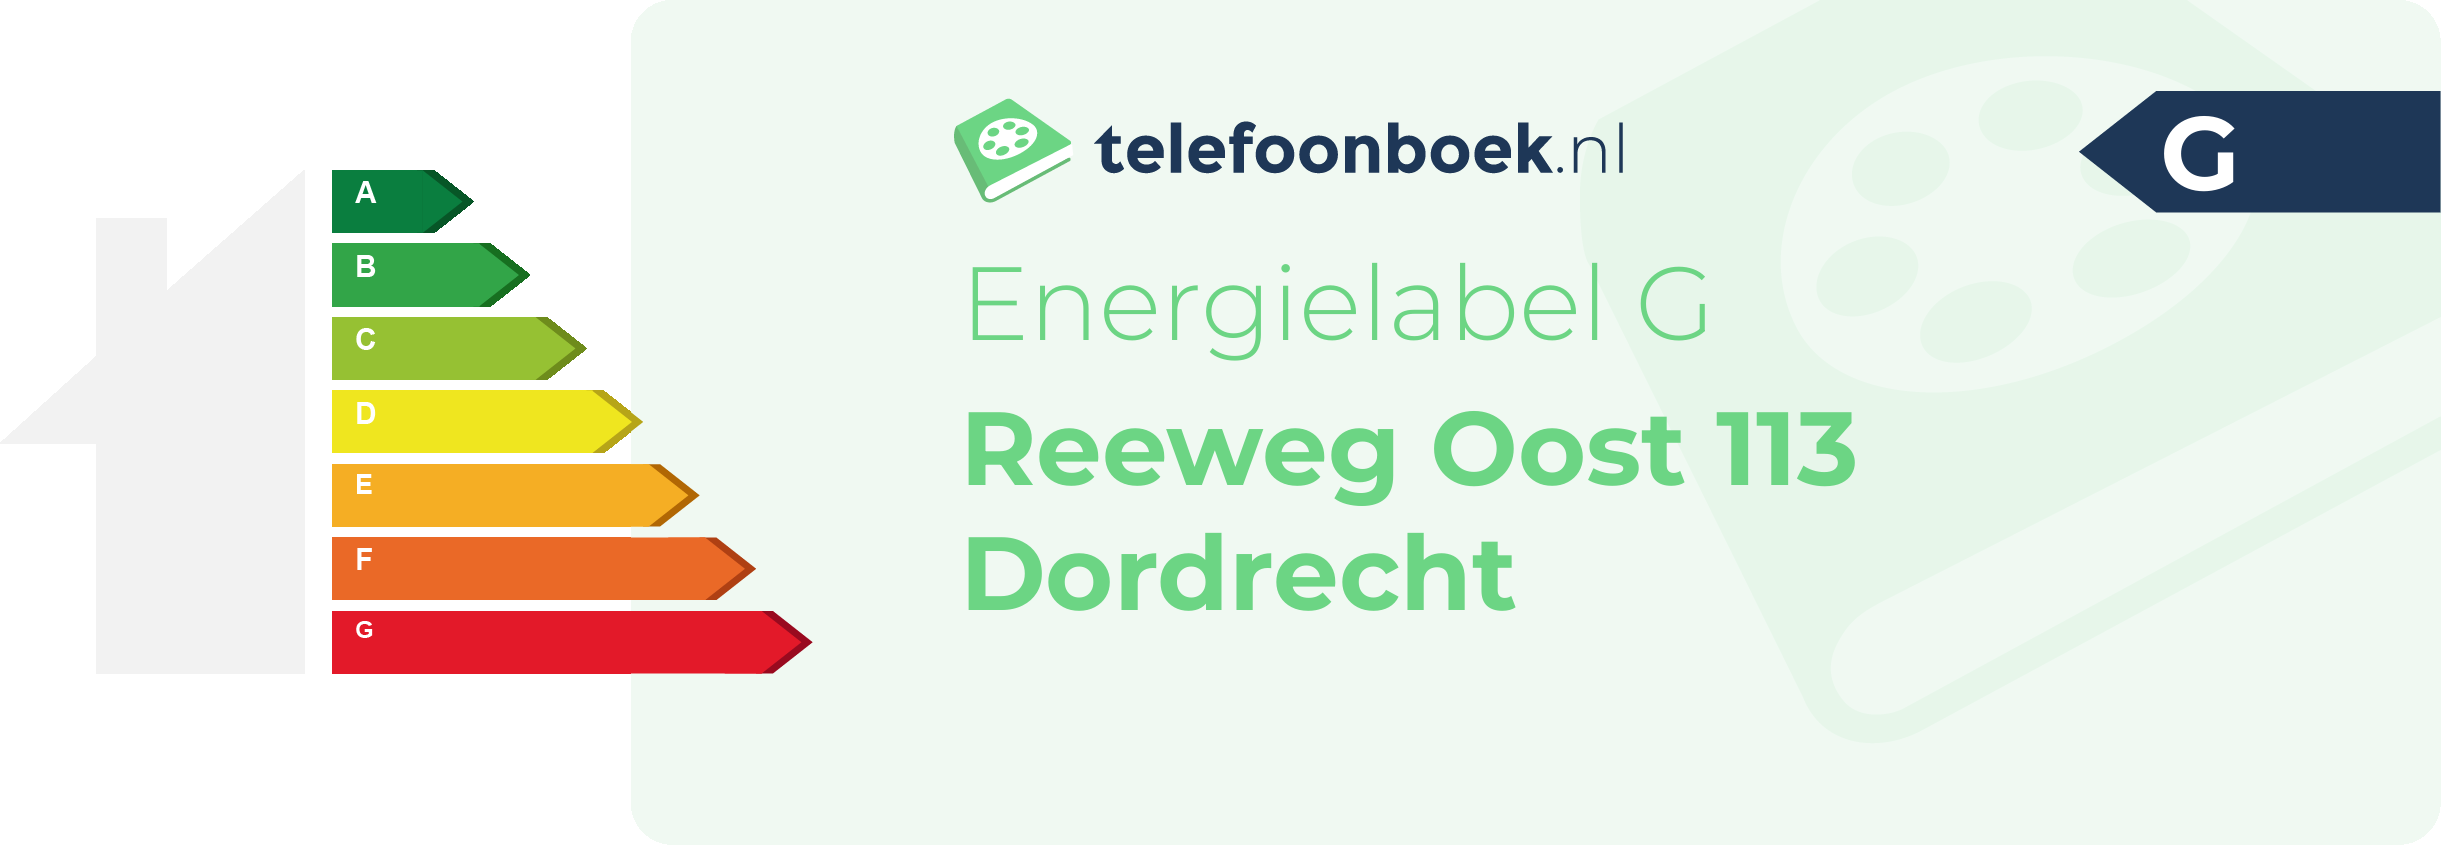 Energielabel Reeweg Oost 113 Dordrecht